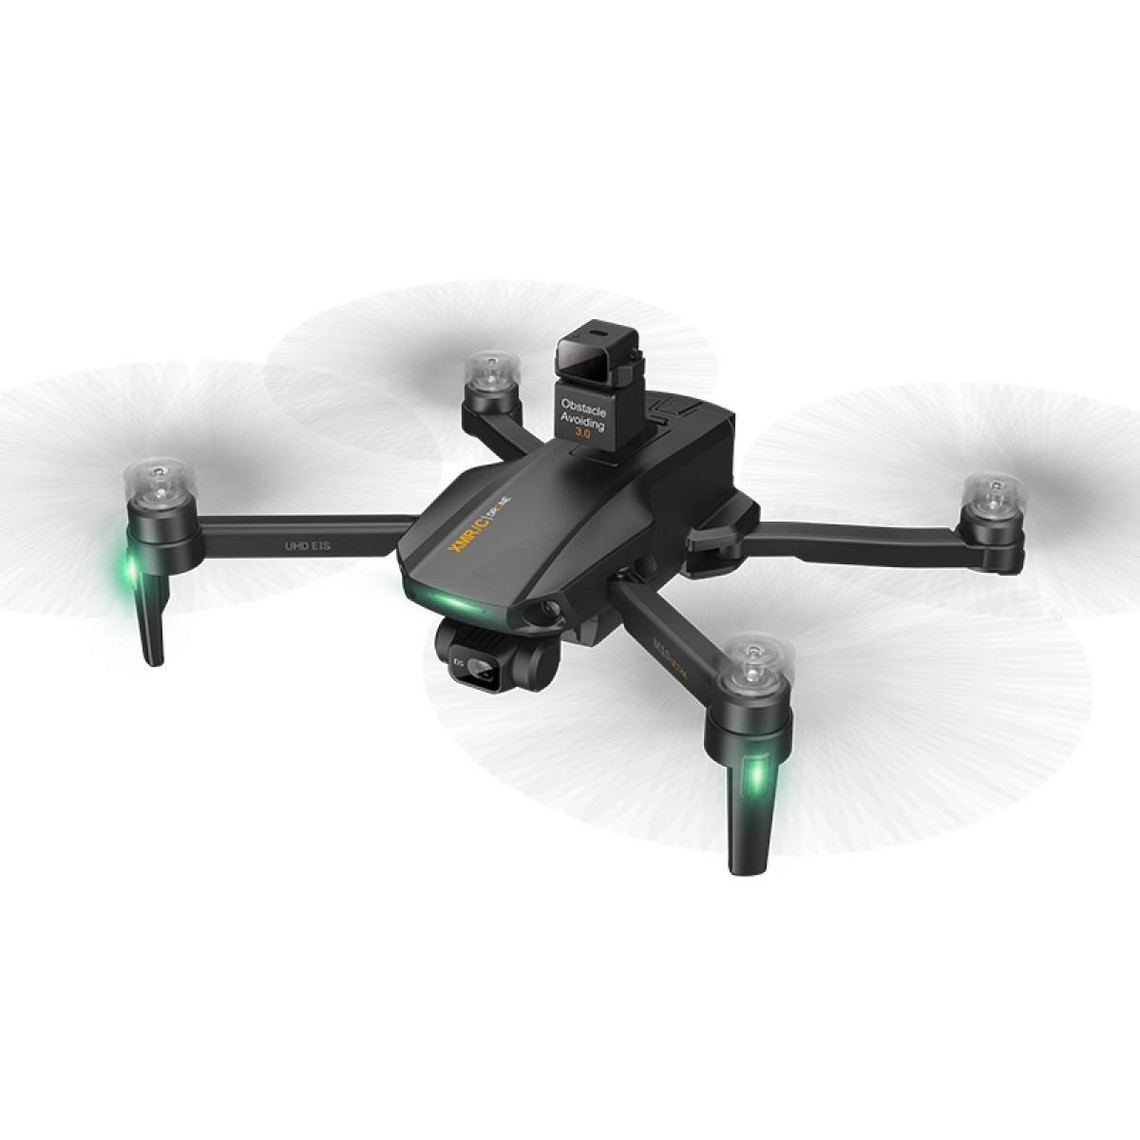 Drone connecté Generique Brother Drone M10 Ultra avec 4K UHD caméra GPS Fonction d'évitement d'obstacles FPV 2 Batterie Noir